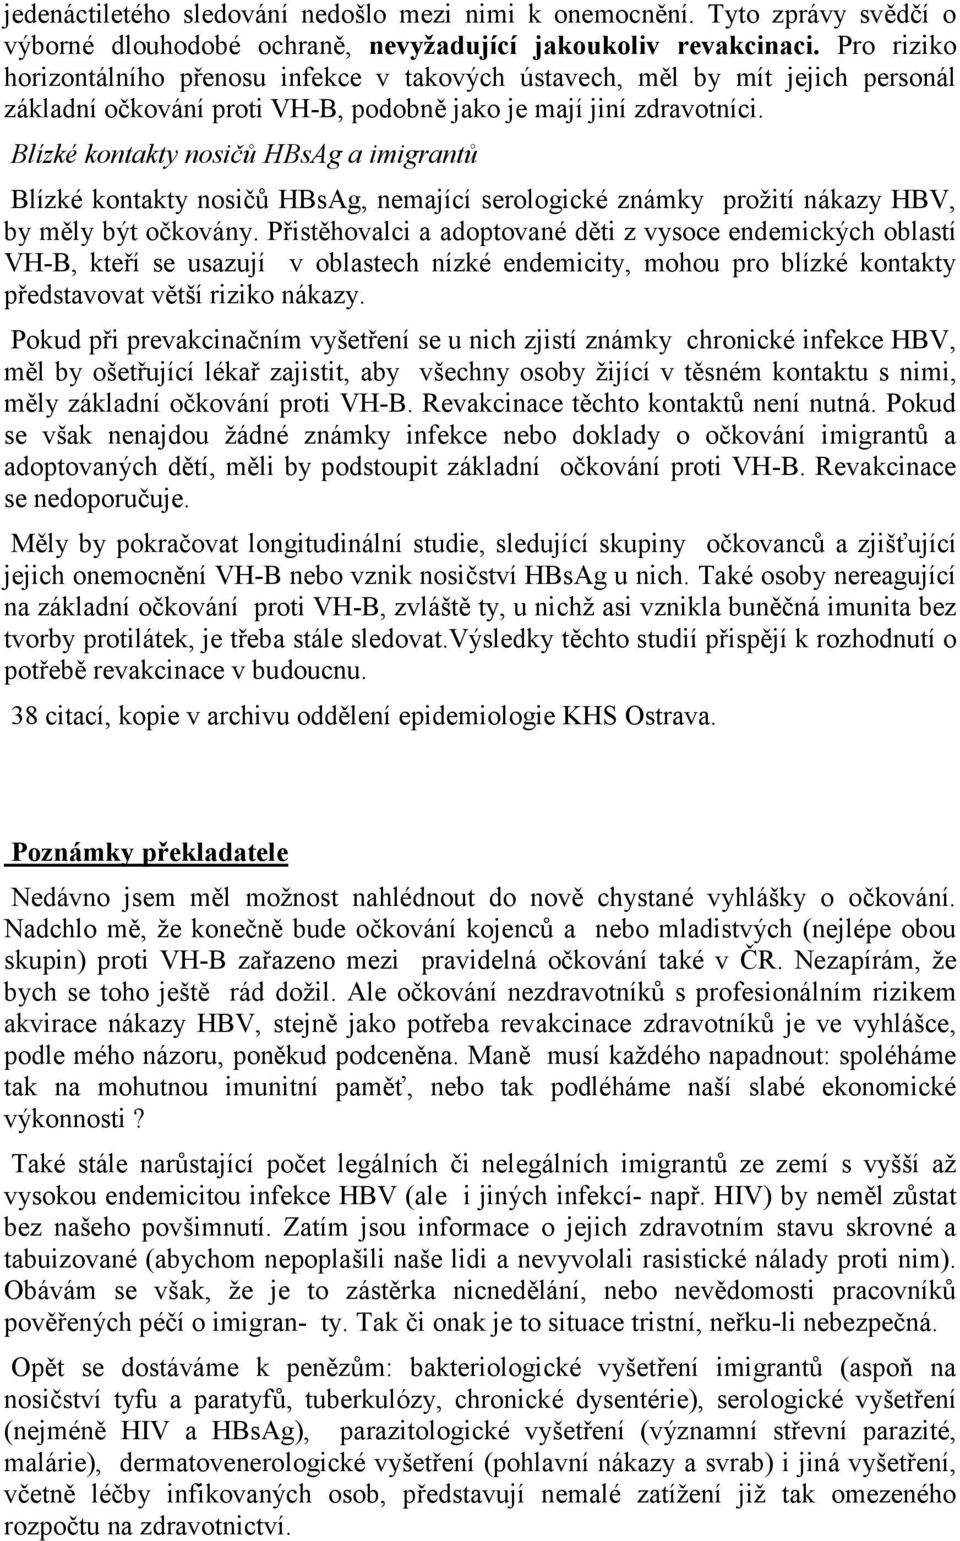 Blízké kontakty nosičů HBsAg a imigrantů Blízké kontakty nosičů HBsAg, nemající serologické známky prožití nákazy HBV, by měly být očkovány.